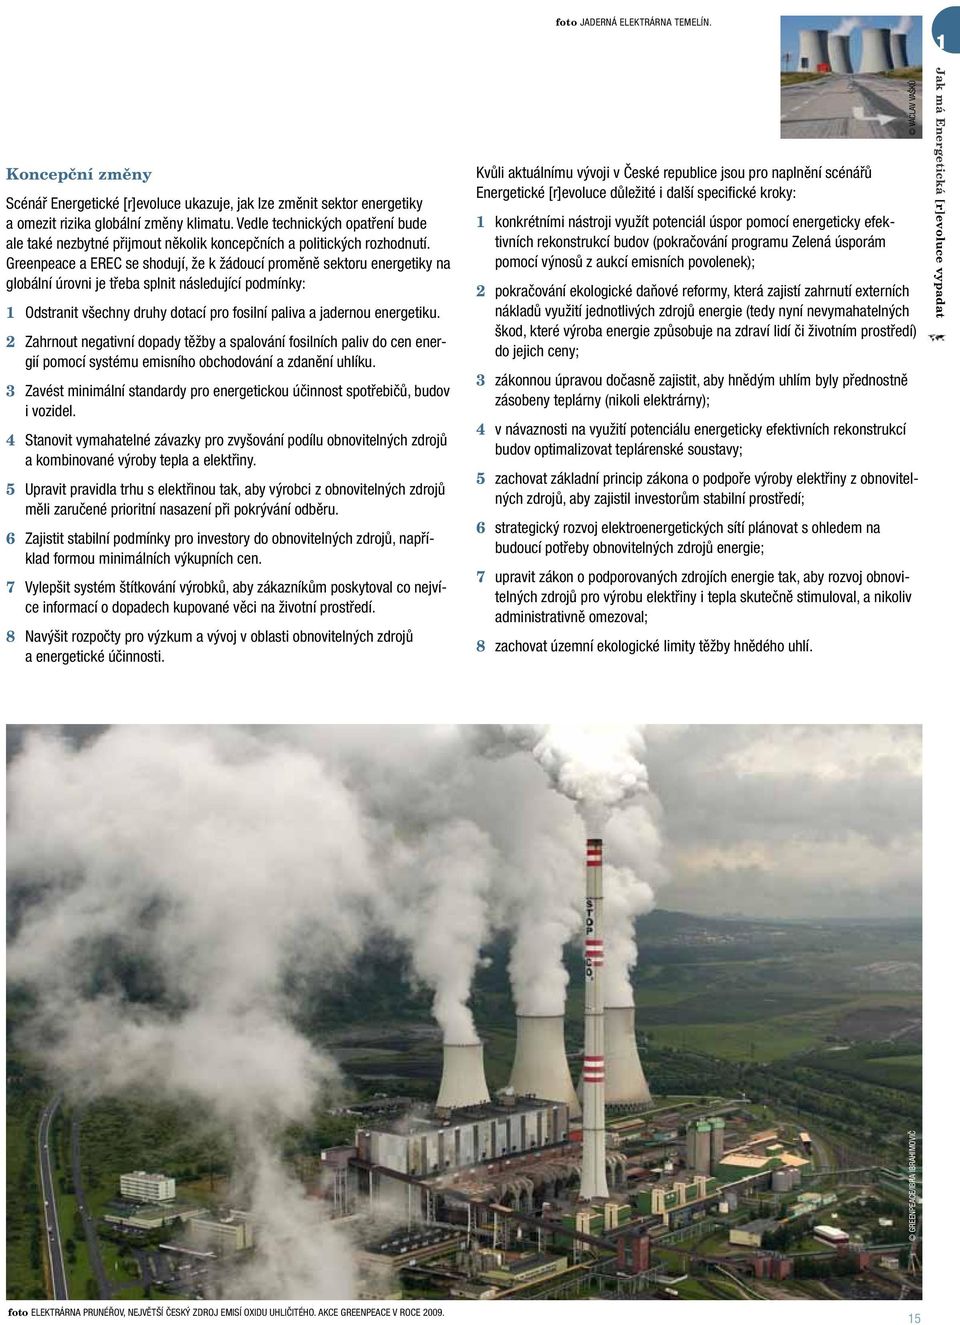 Greenpeace a EREC se shodují, že k žádoucí proměně sektoru energetiky na globální úrovni je třeba splnit následující podmínky: 1 Odstranit všechny druhy dotací pro fosilní paliva a jadernou